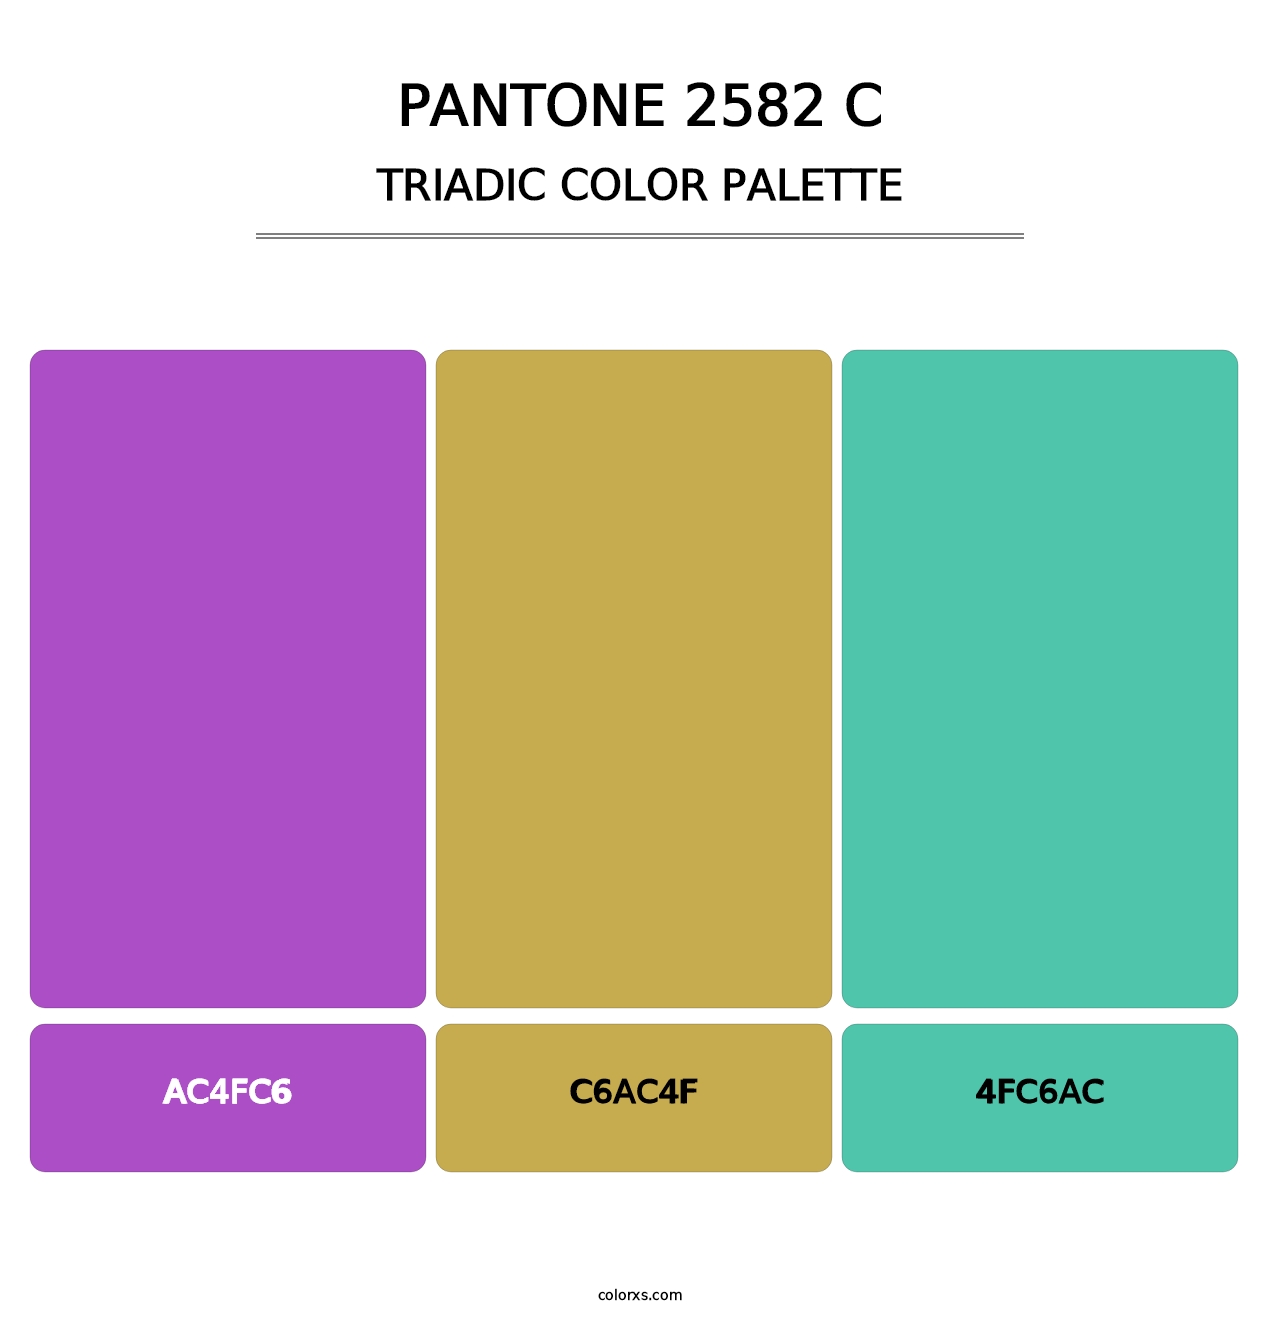 PANTONE 2582 C - Triadic Color Palette